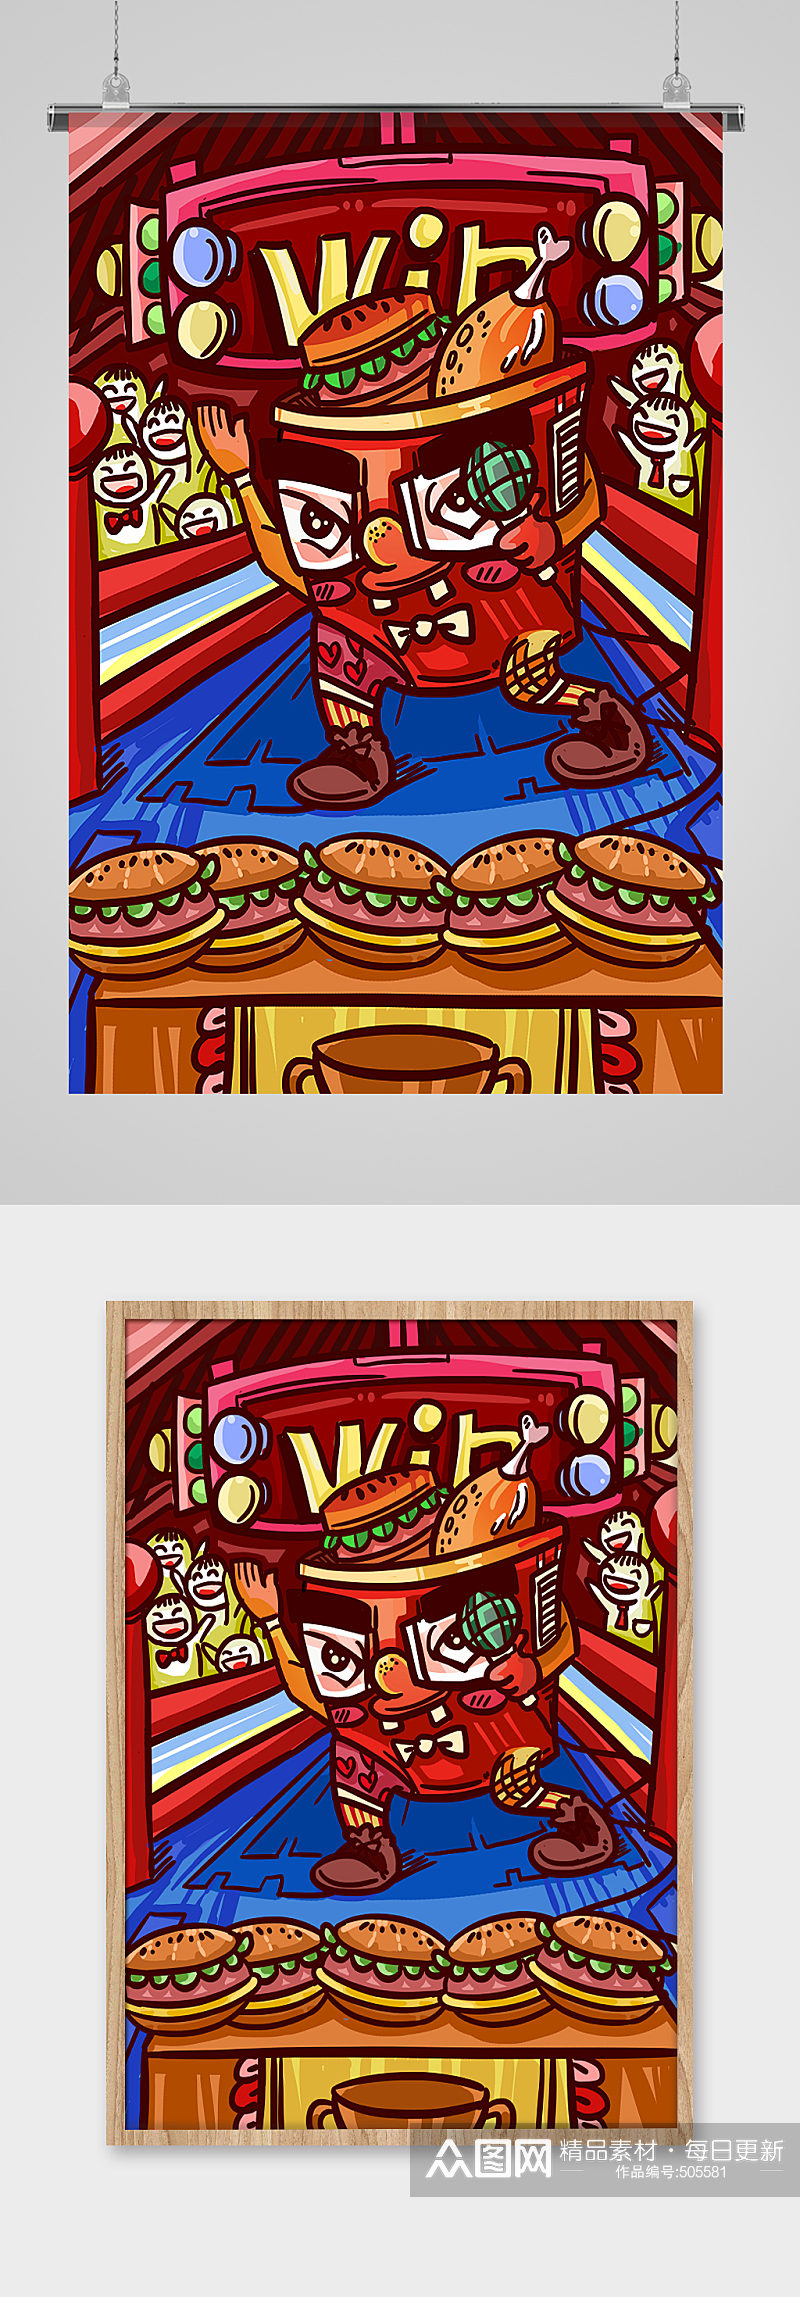 创意新潮手绘大胃王汉堡插画素材